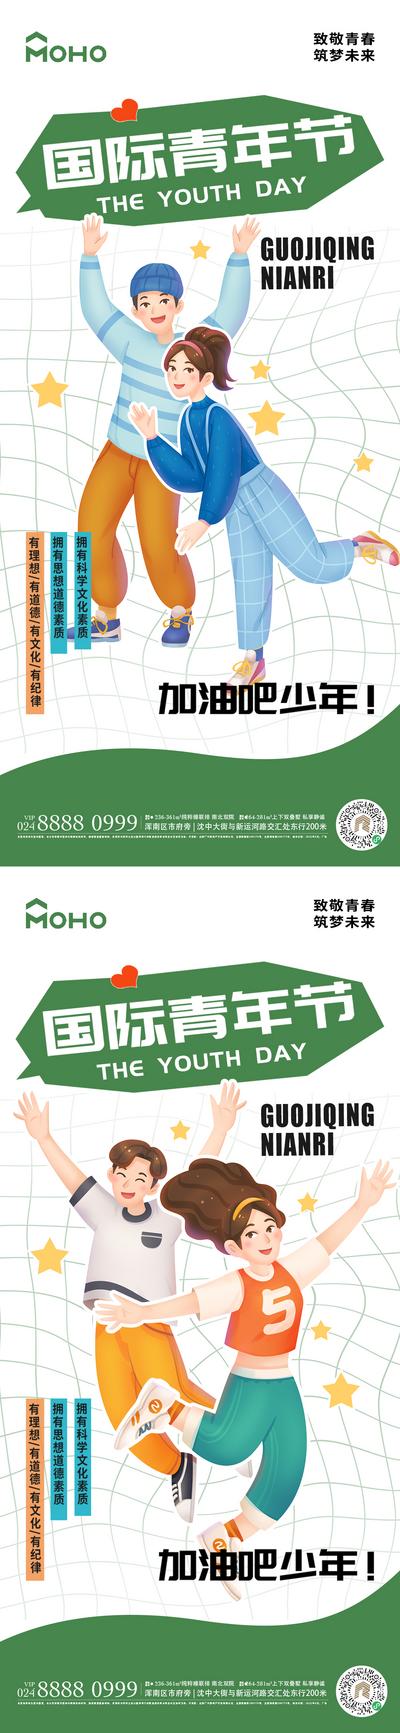 南门网 广告 运动 五四 青年节 54 青年 活力 放假 游玩 年轻 少年 音乐